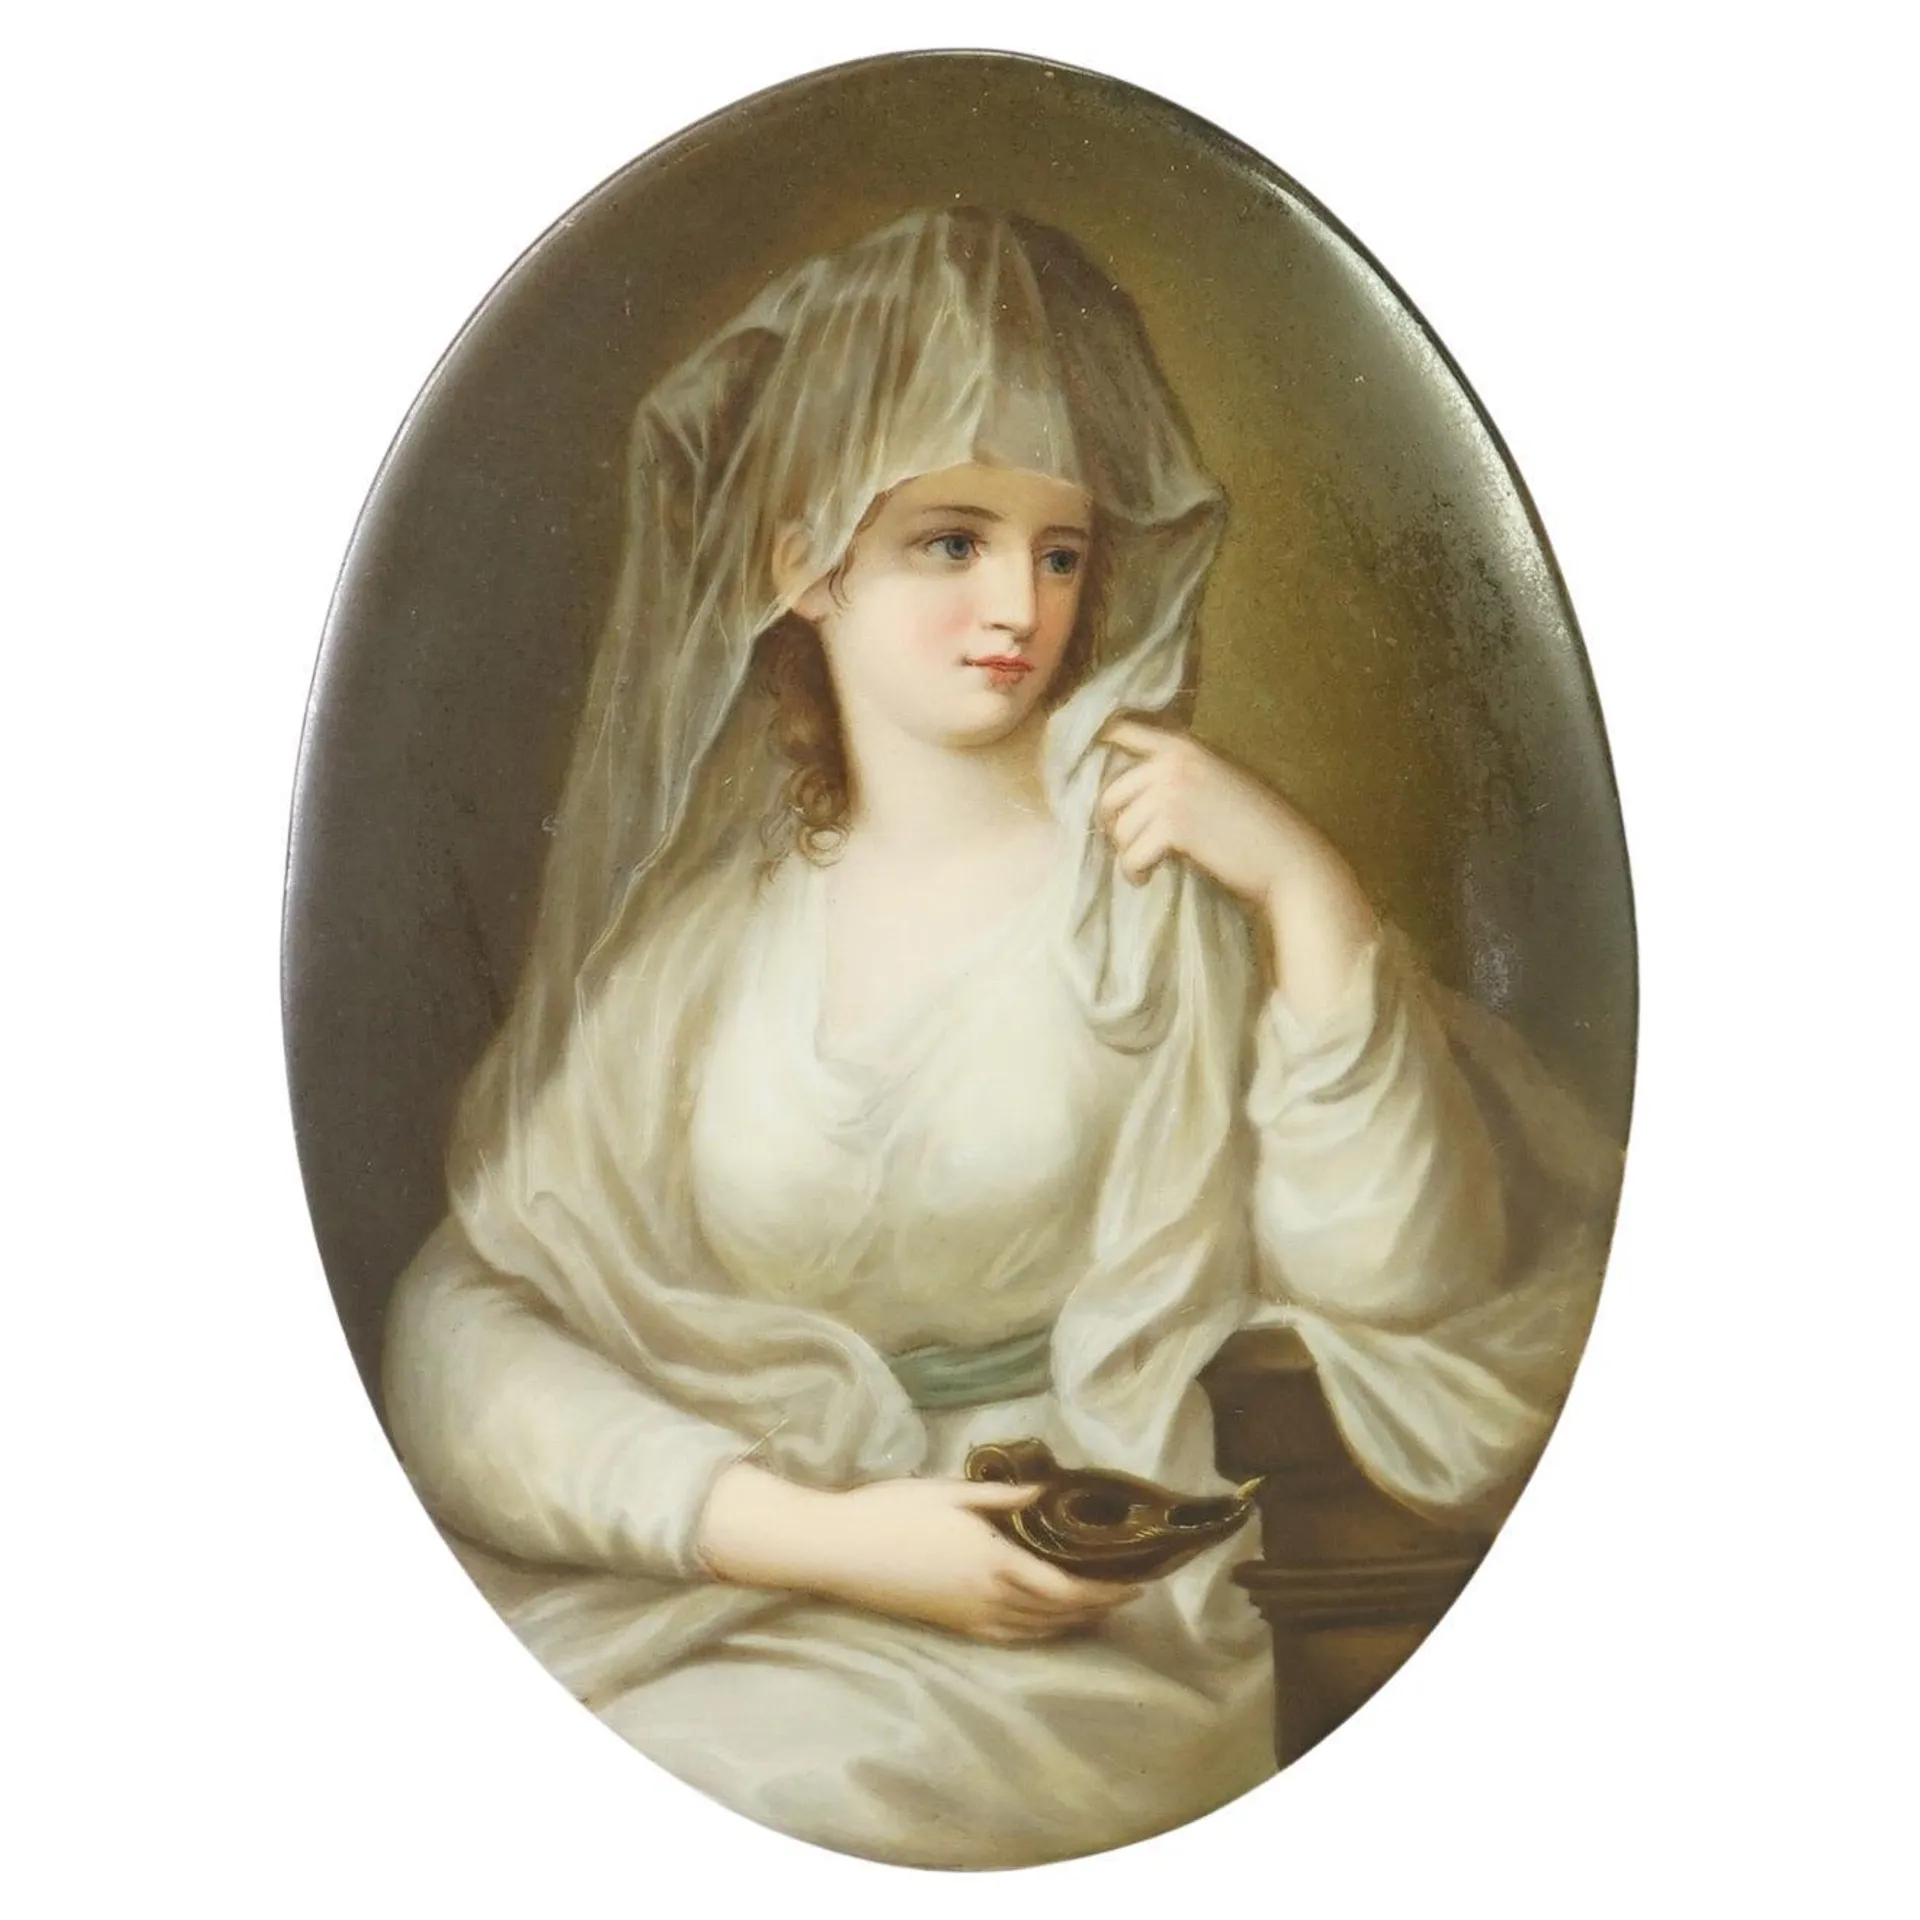 Antique German Porcelain Hand Painted Portrait Plaque Of Young Woman 19th C